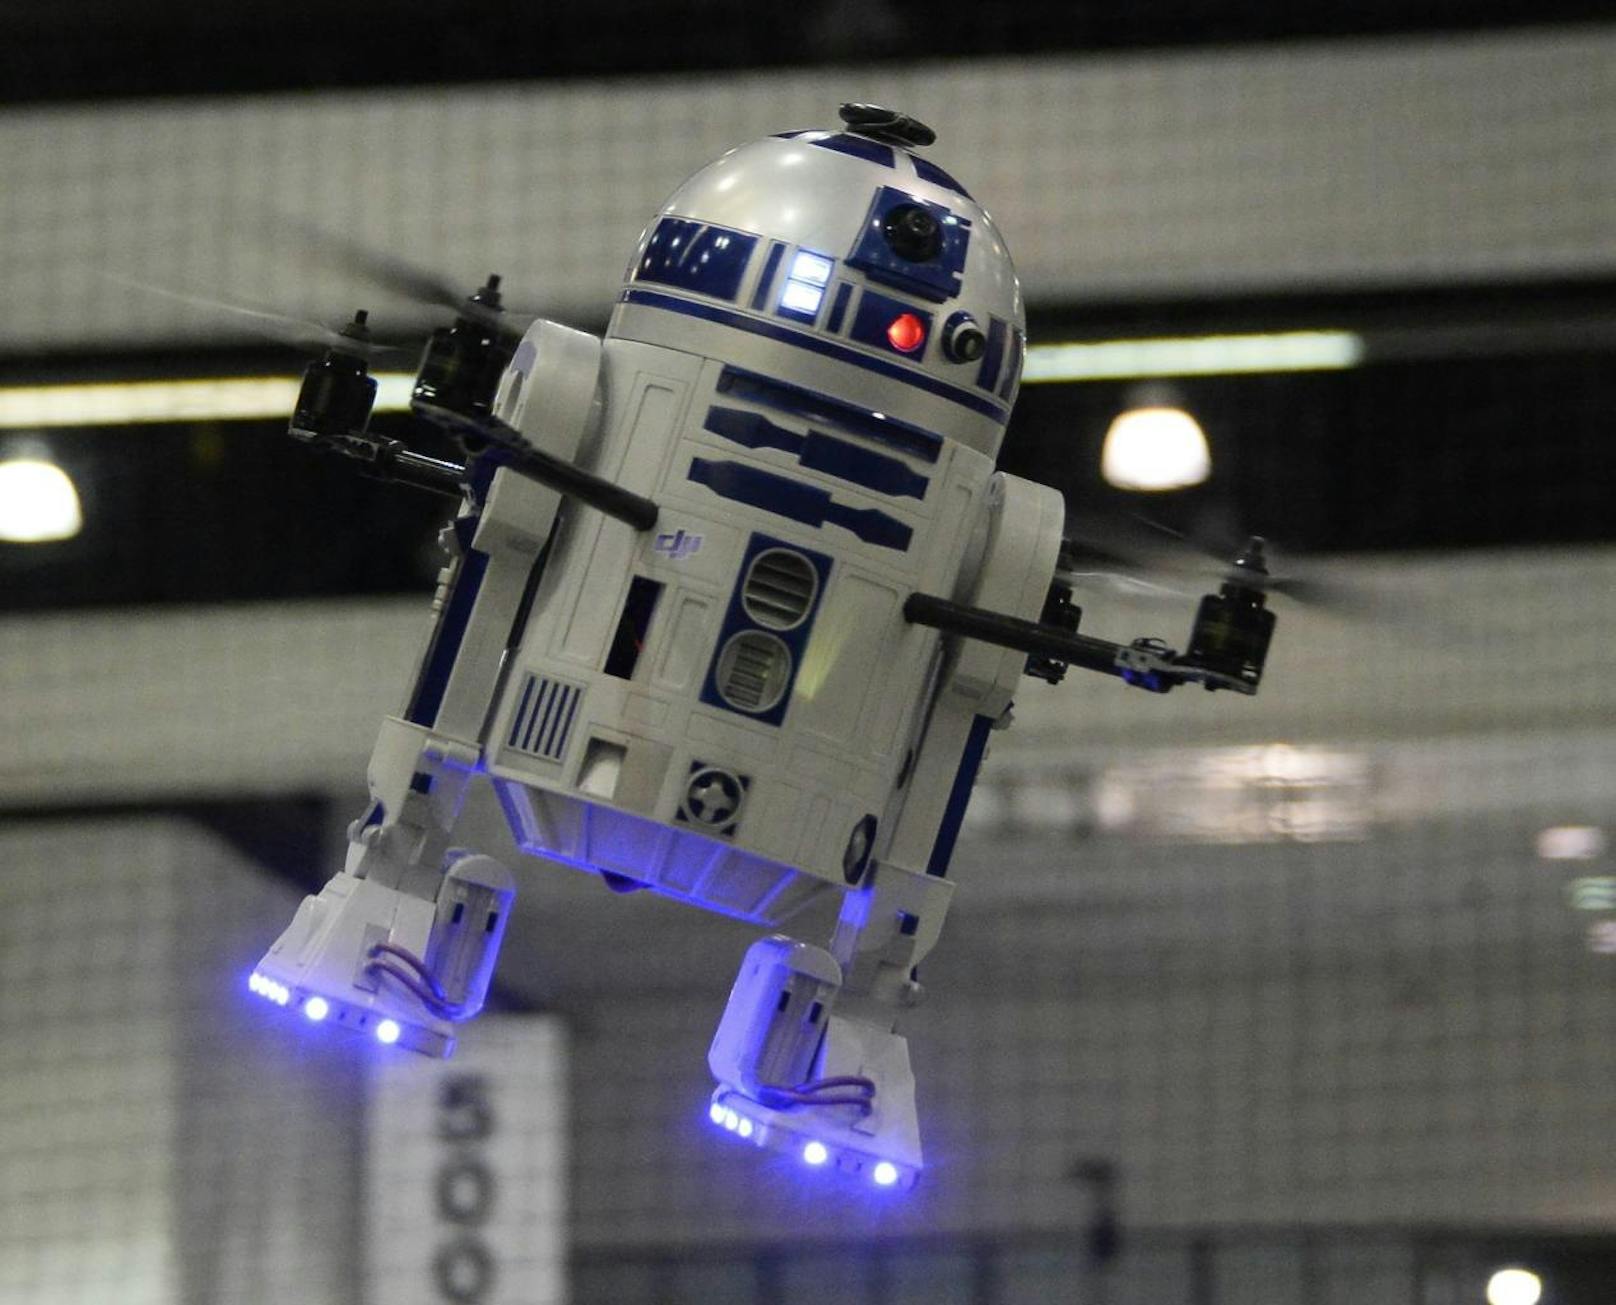 R2-D2 (Kenny Baker) in "Star Wars III"